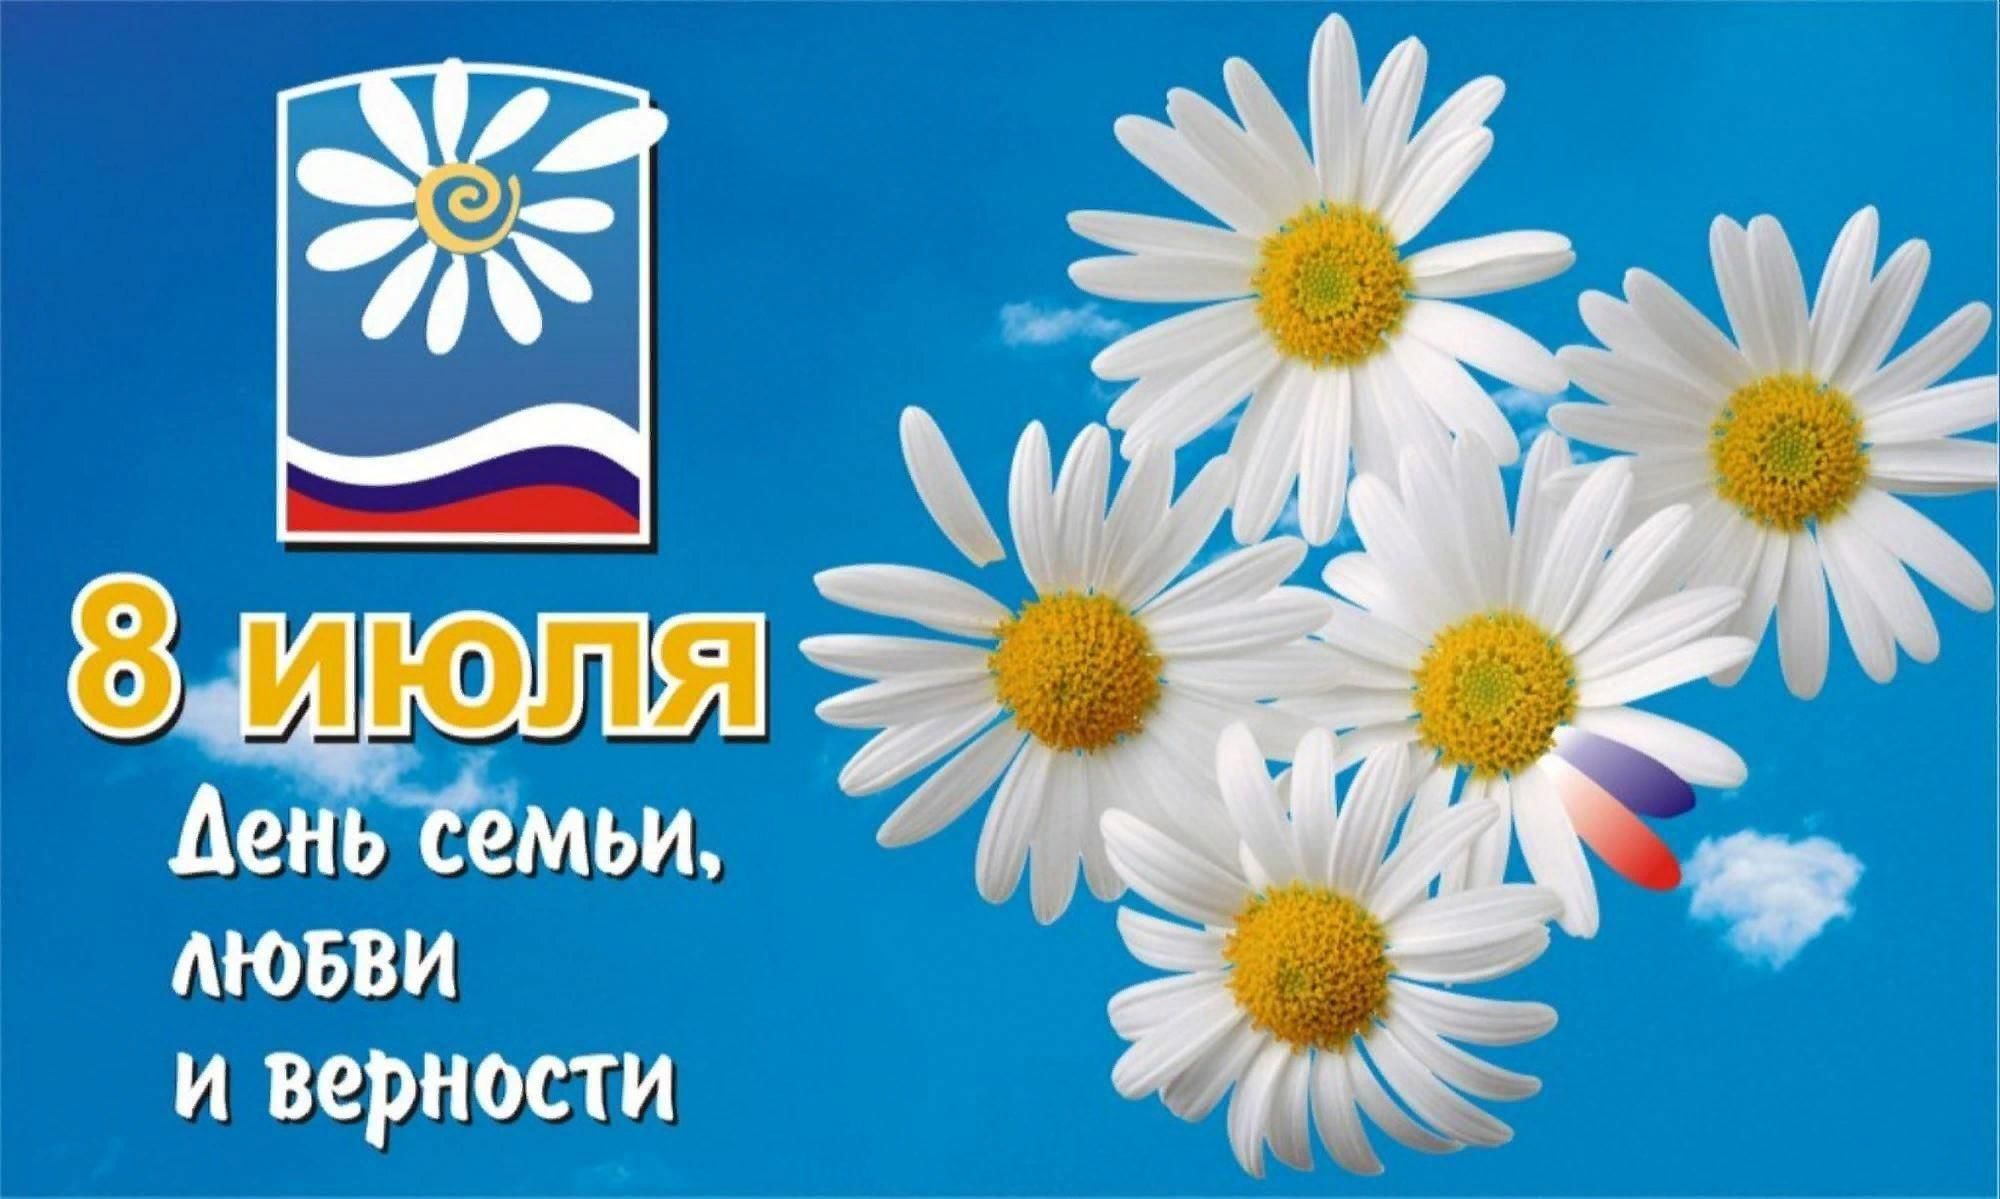 Сегодня в России отмечается День семьи, любви и верности.